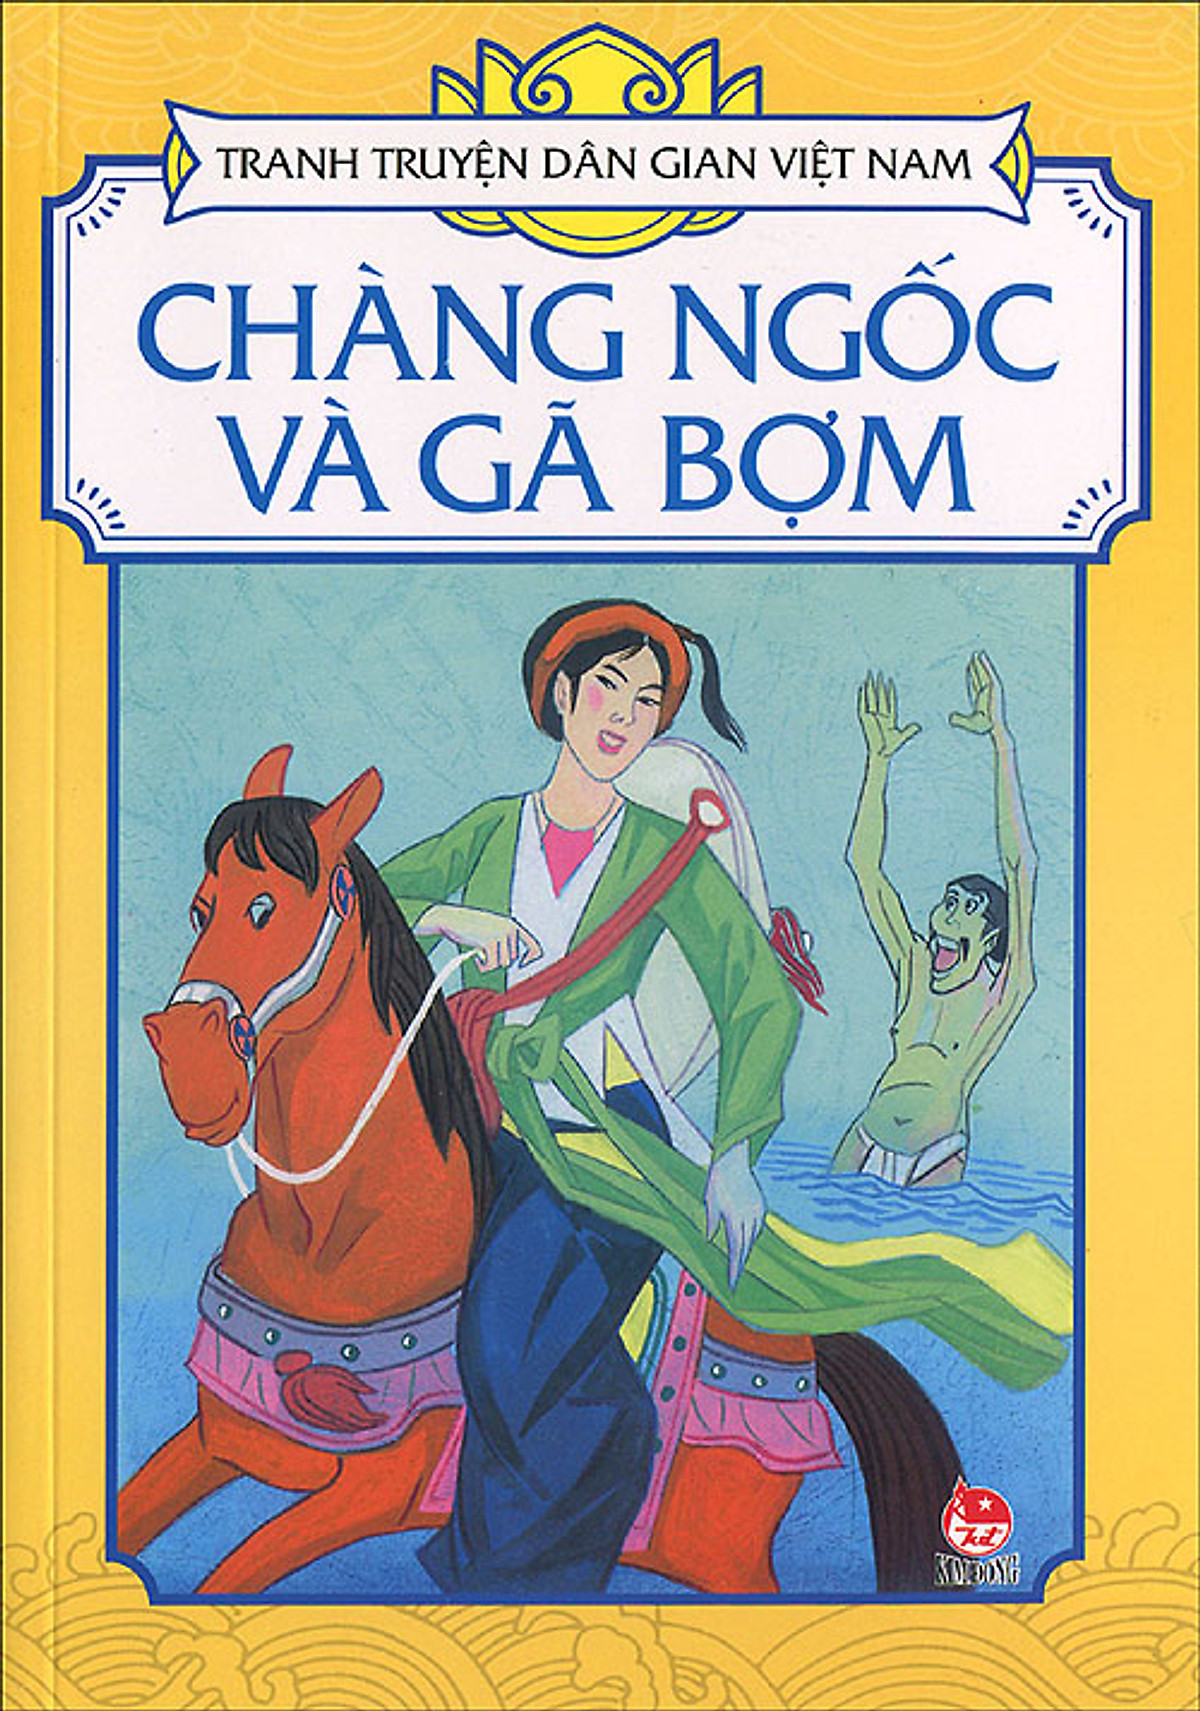 Tranh Truyện Dân Gian Việt Nam - Chàng Ngốc Và Gã Bợm